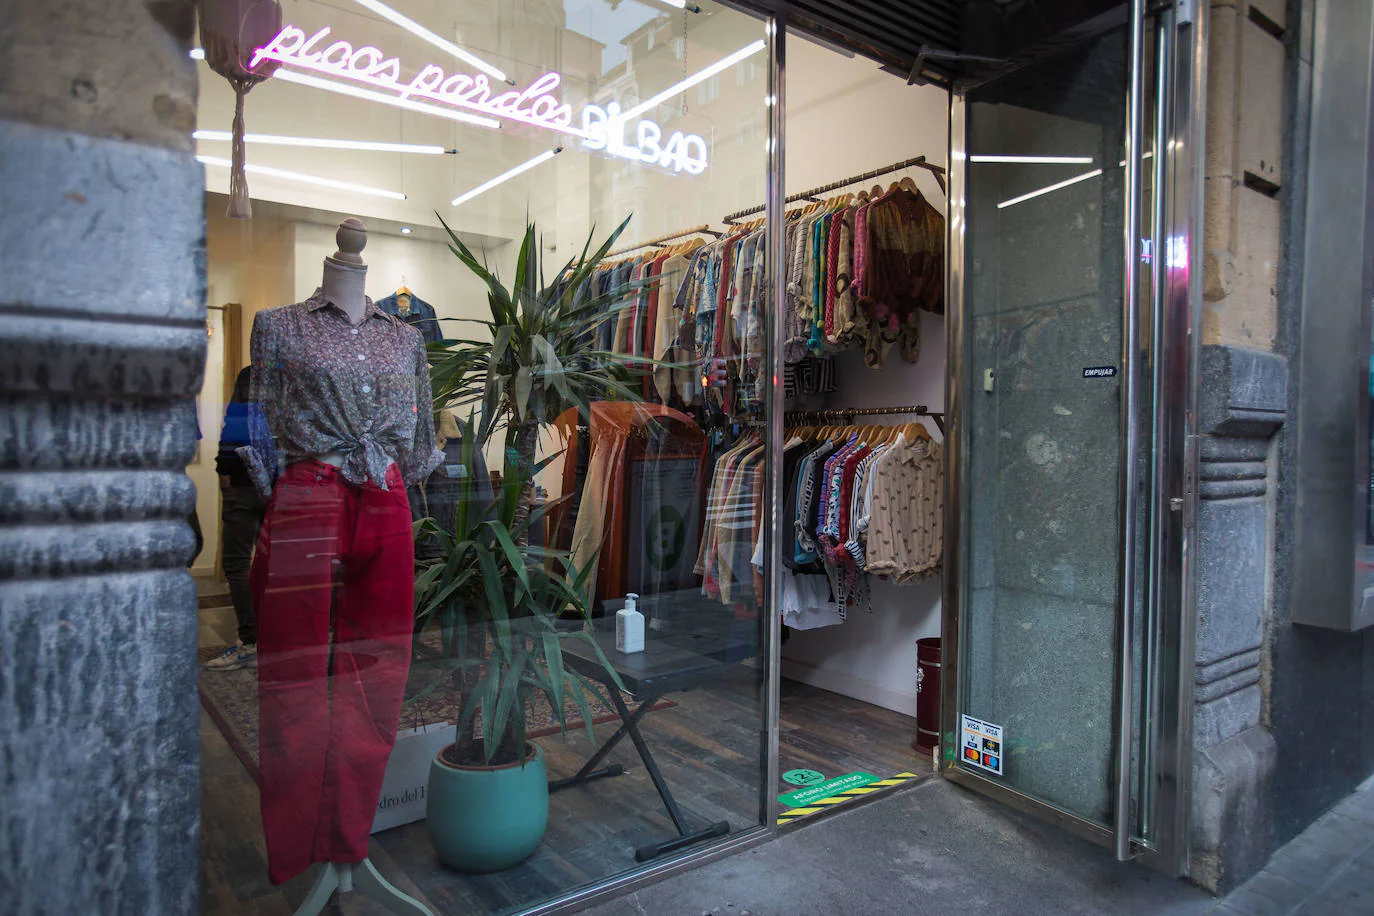 Fotos: tienda 'vintage' ropa de segunda mano que nació en Bilbao plena pandemia | El